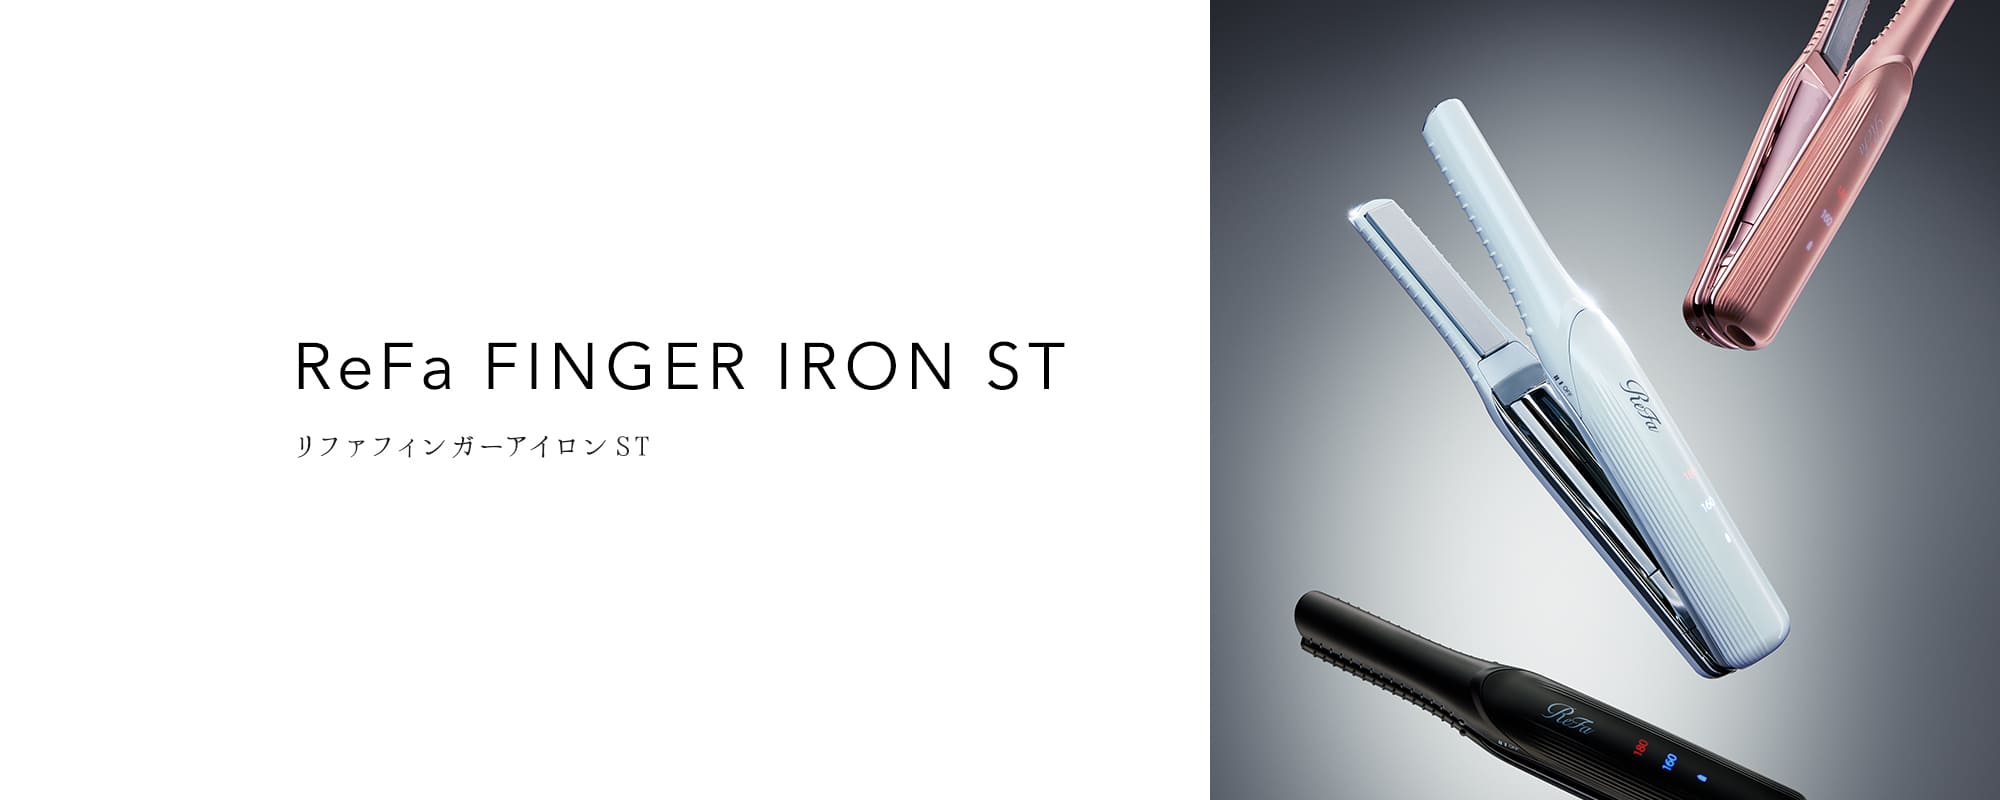 リファフィンガーアイロン ST - ReFa FINGER IRON ST | 商品情報 